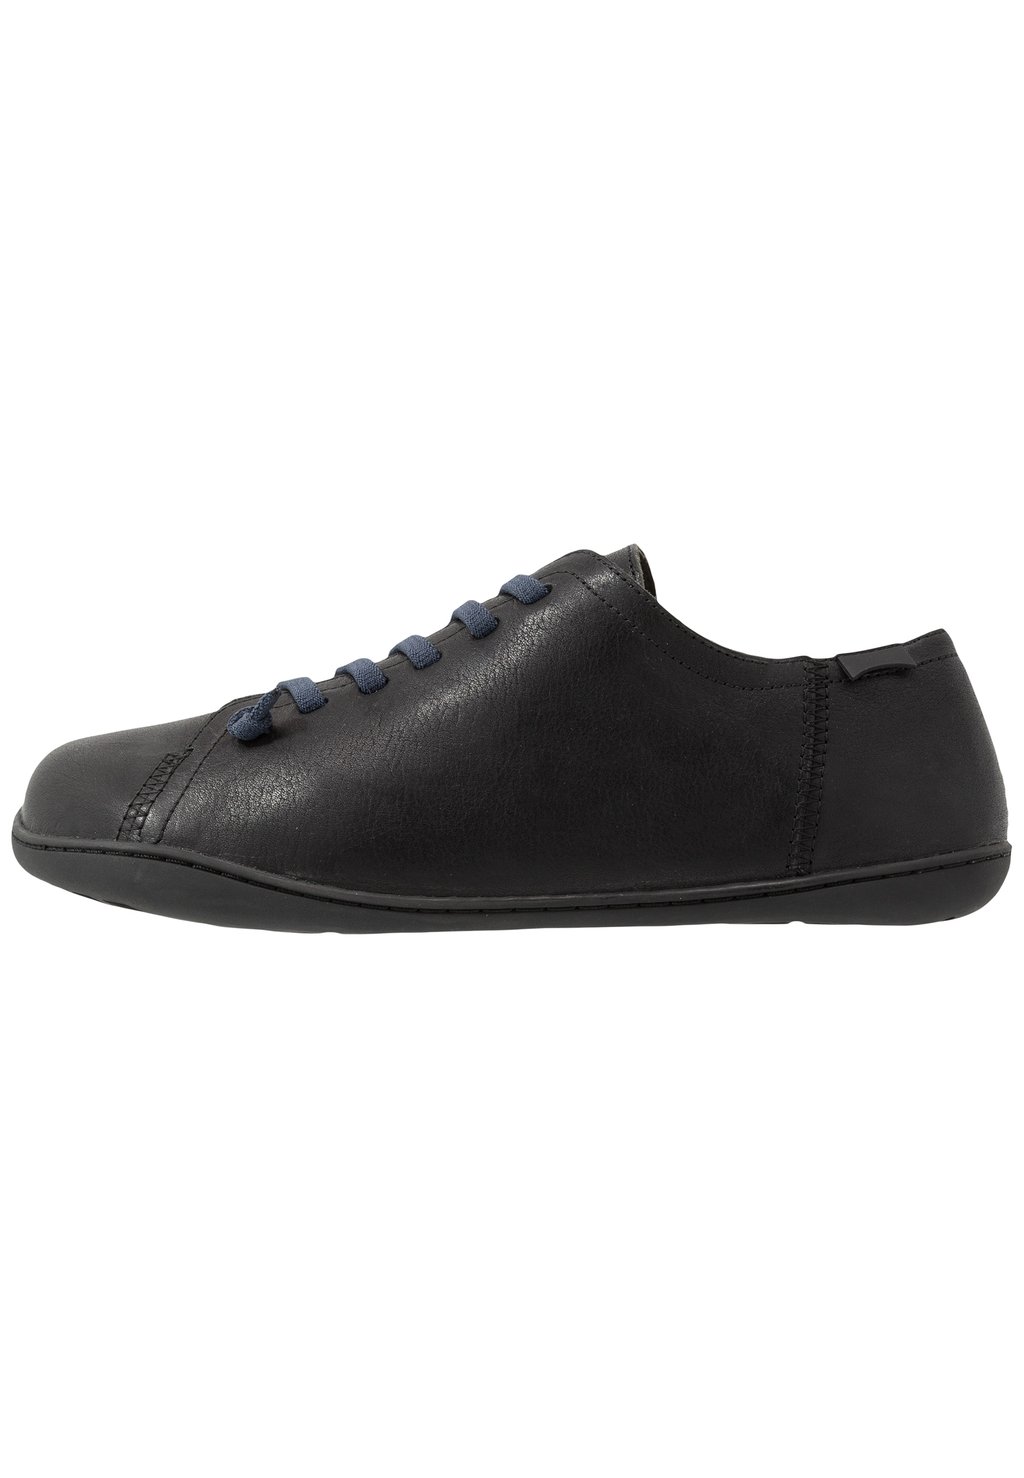 Спортивные туфли на шнуровке PEU CAMI Camper, черные